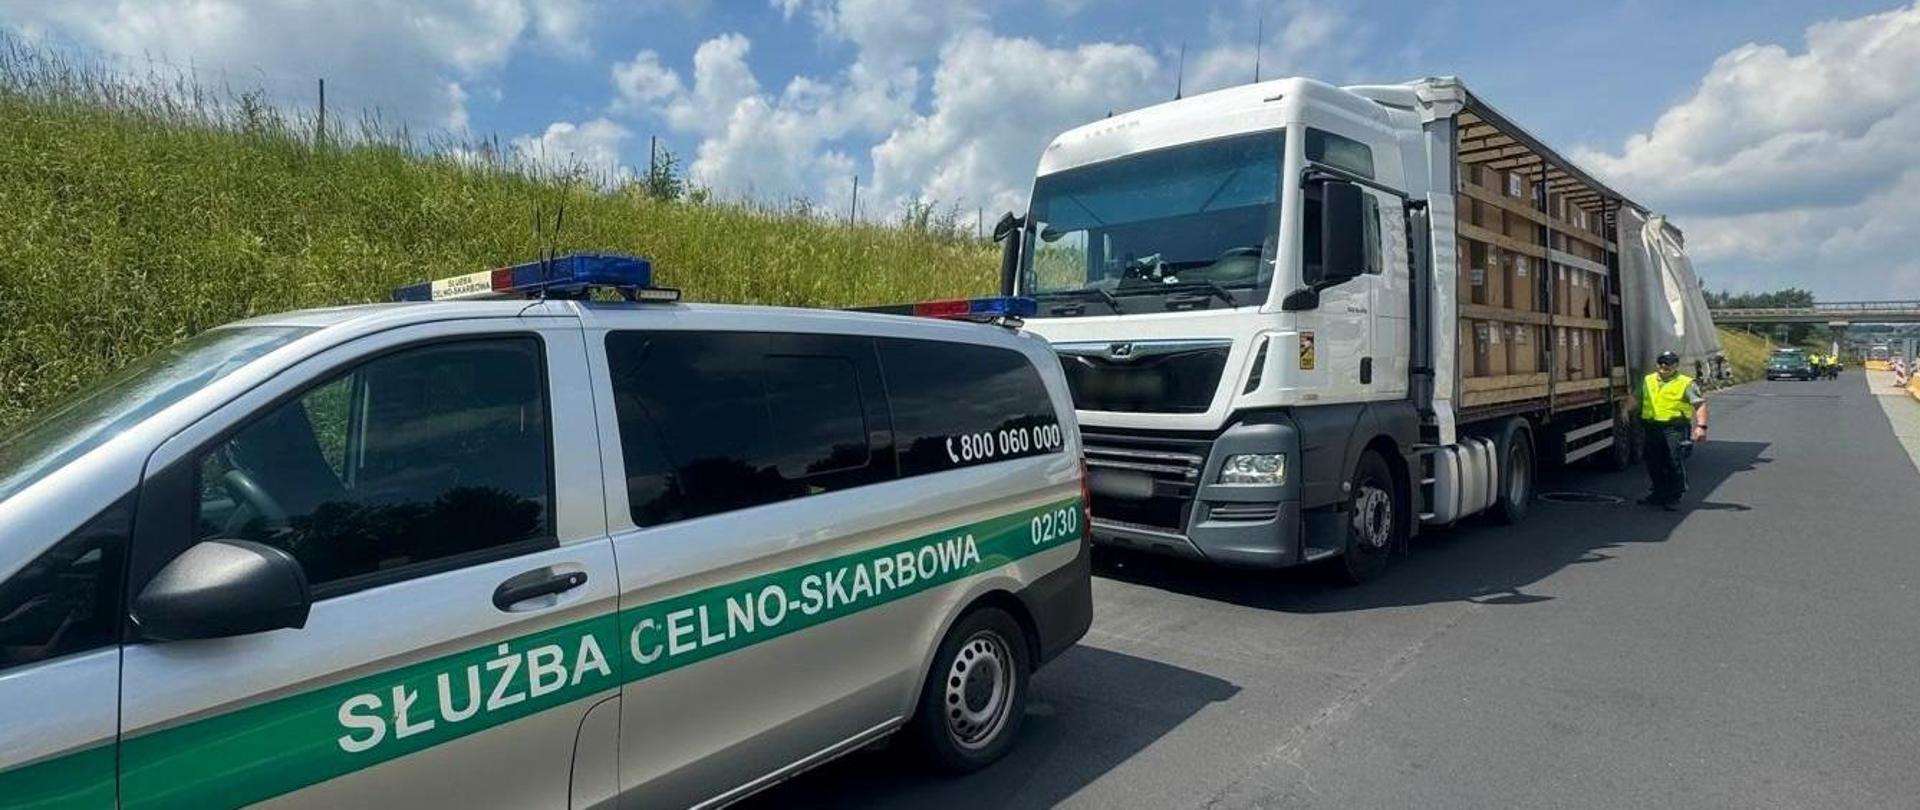 Radiowóz Służby Celno-Skarbowej, zatrzymany samochód ciężarowy, funkcjonariusz przy naczepie.